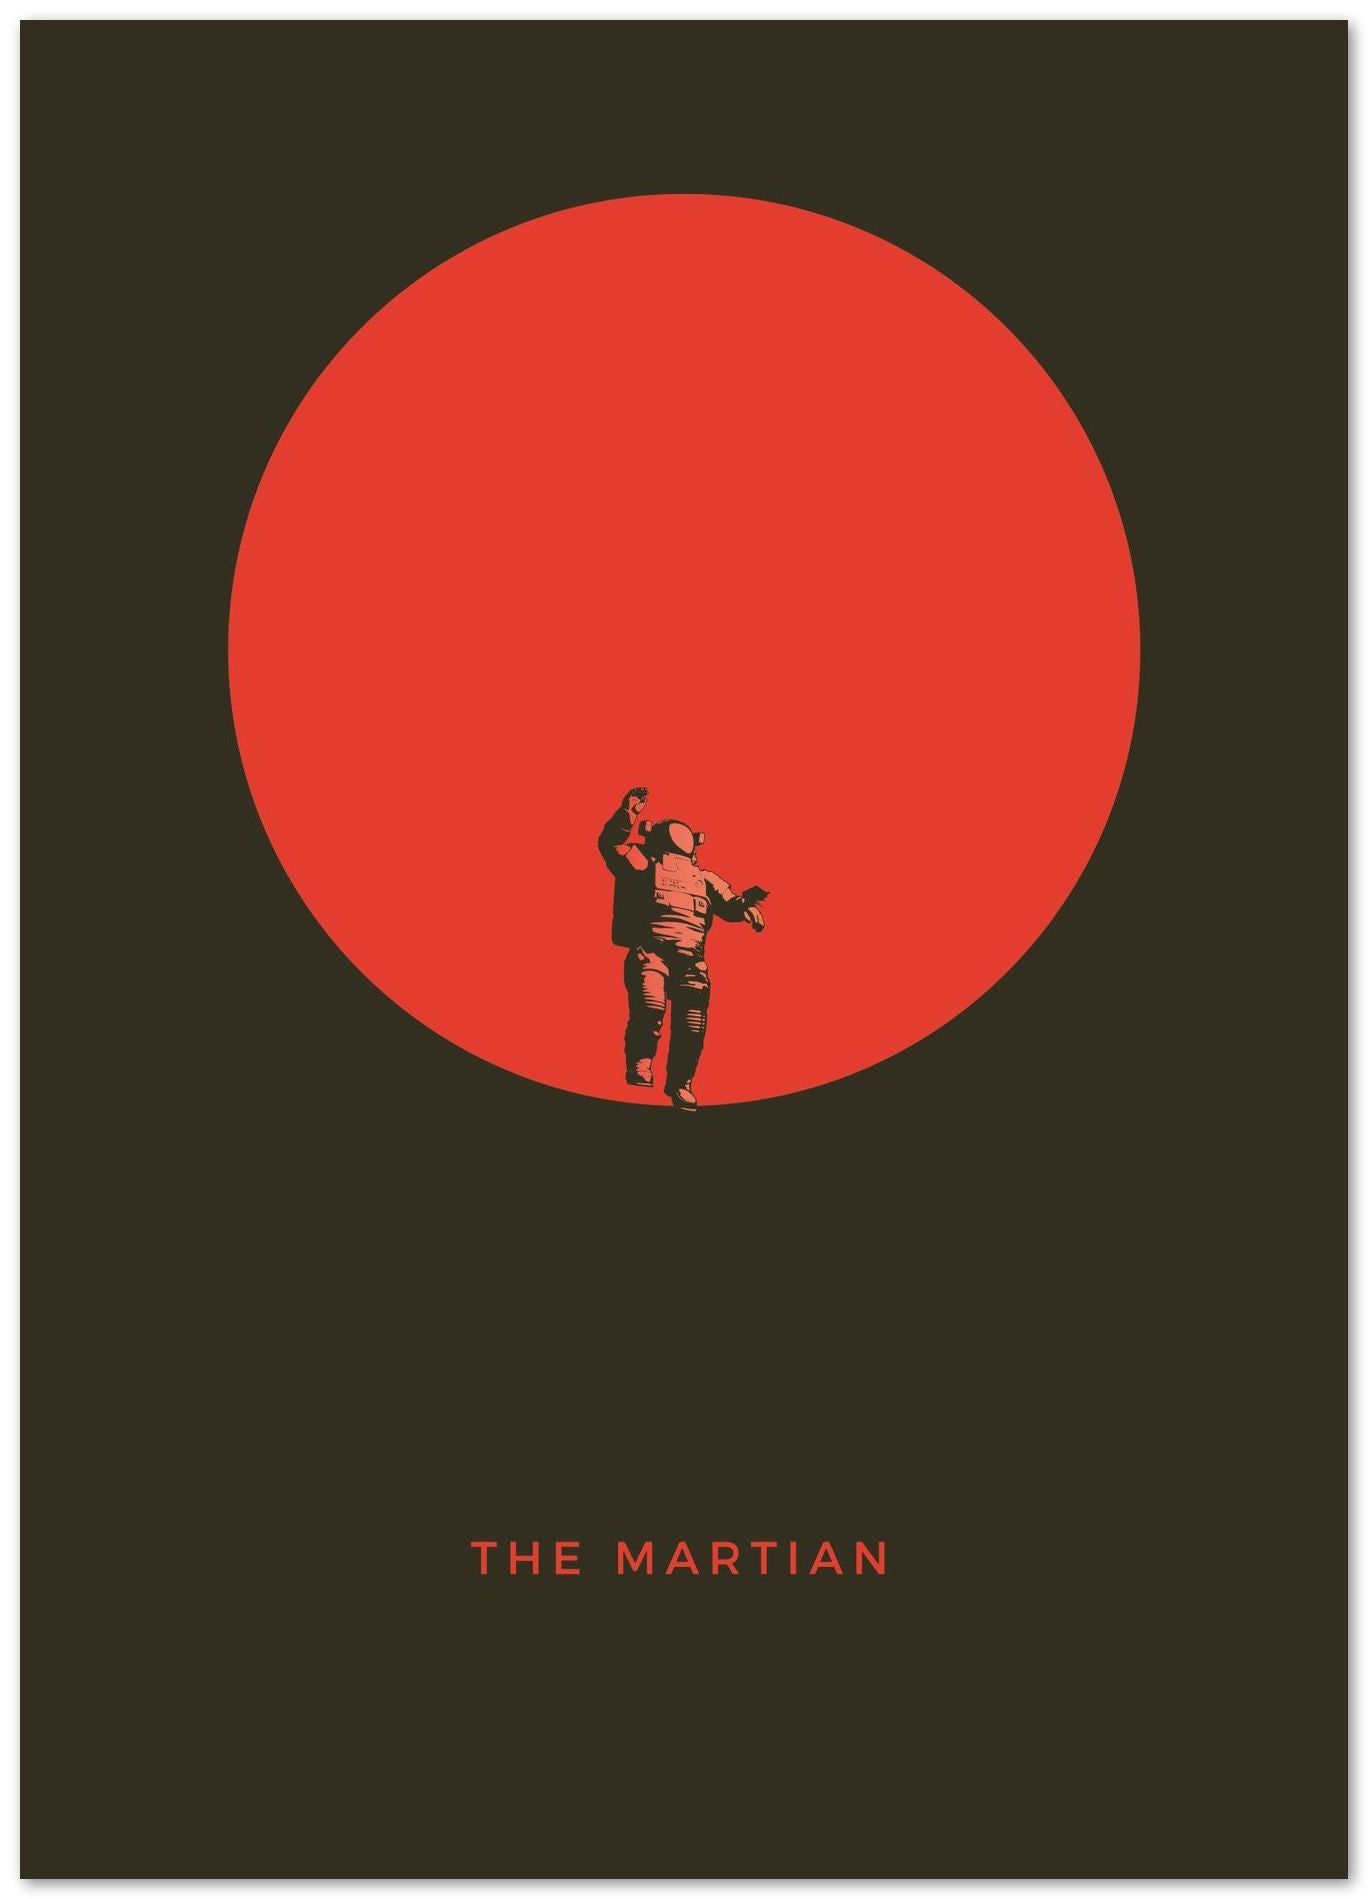 The Martian - @donluisjimenez